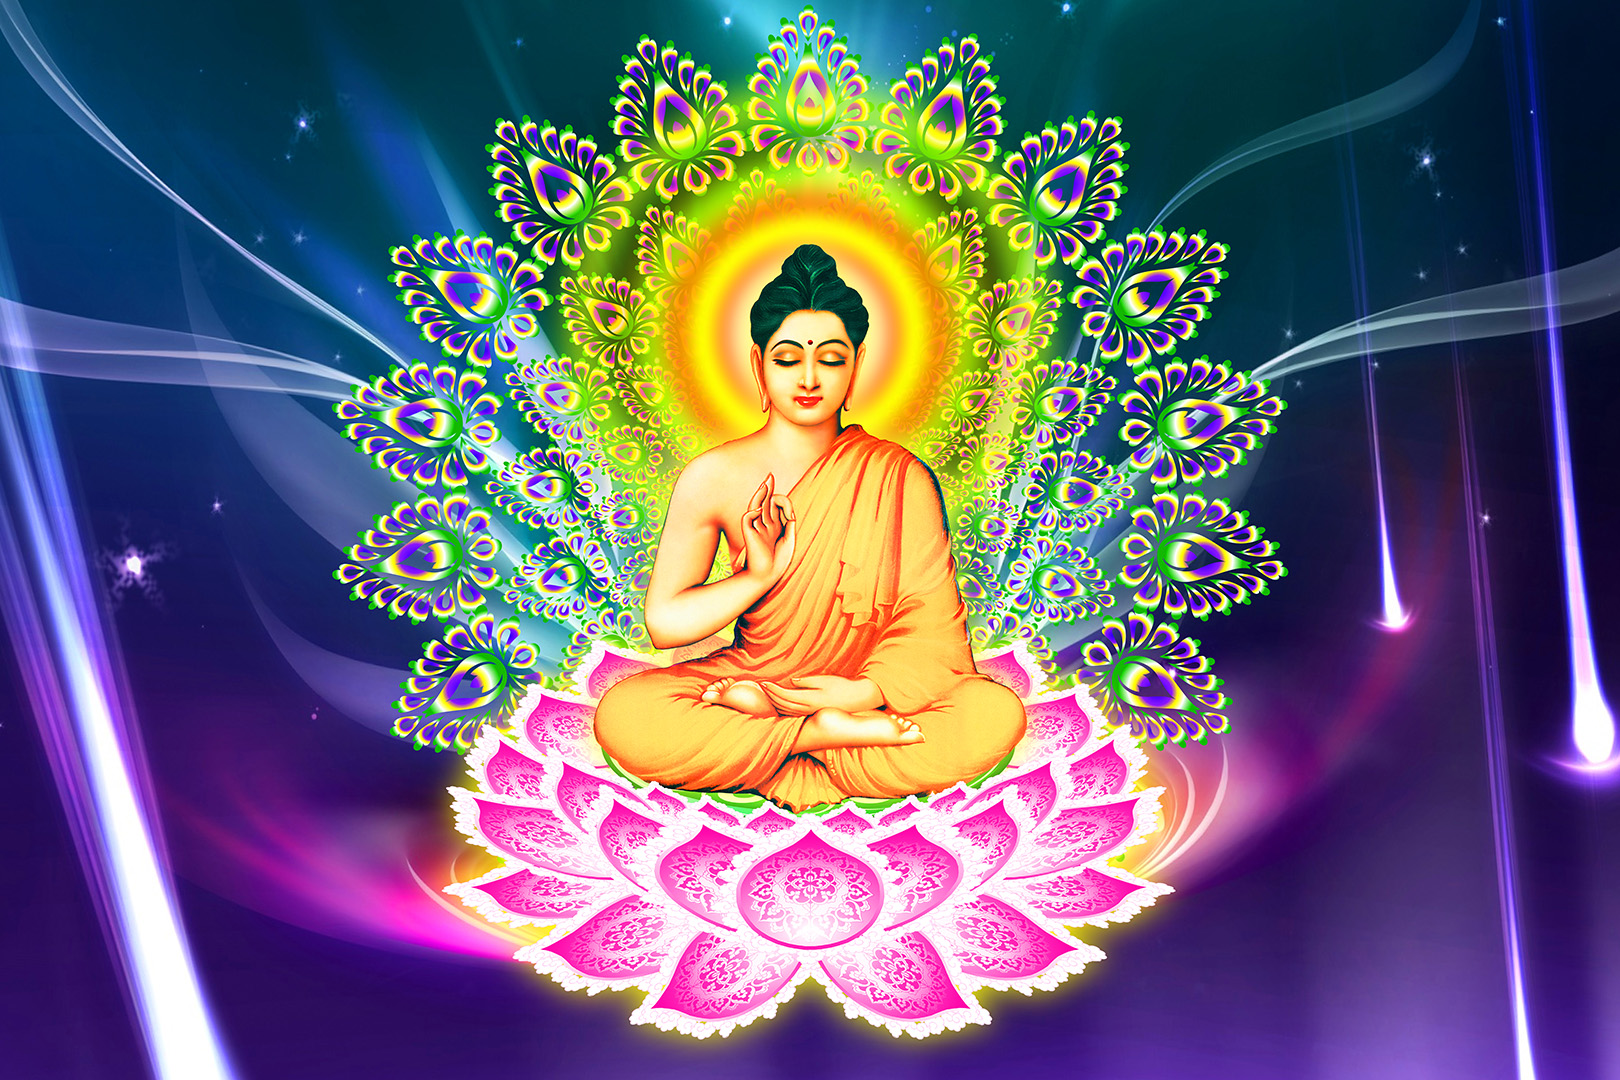 Thích Ca Mâu Ni Phật - Thích Ca Mâu Ni Phật là một trong những bậc thầy thượng tọa vượt thời gian và không gian. Hình ảnh chân dung của Ngài luôn tạo cho chúng ta cảm giác bình an và thanh tịnh. Hãy xem hình ảnh của Thích Ca Mâu Ni Phật để trải nghiệm sự tĩnh lặng và yên bình mà Ngài đem lại.